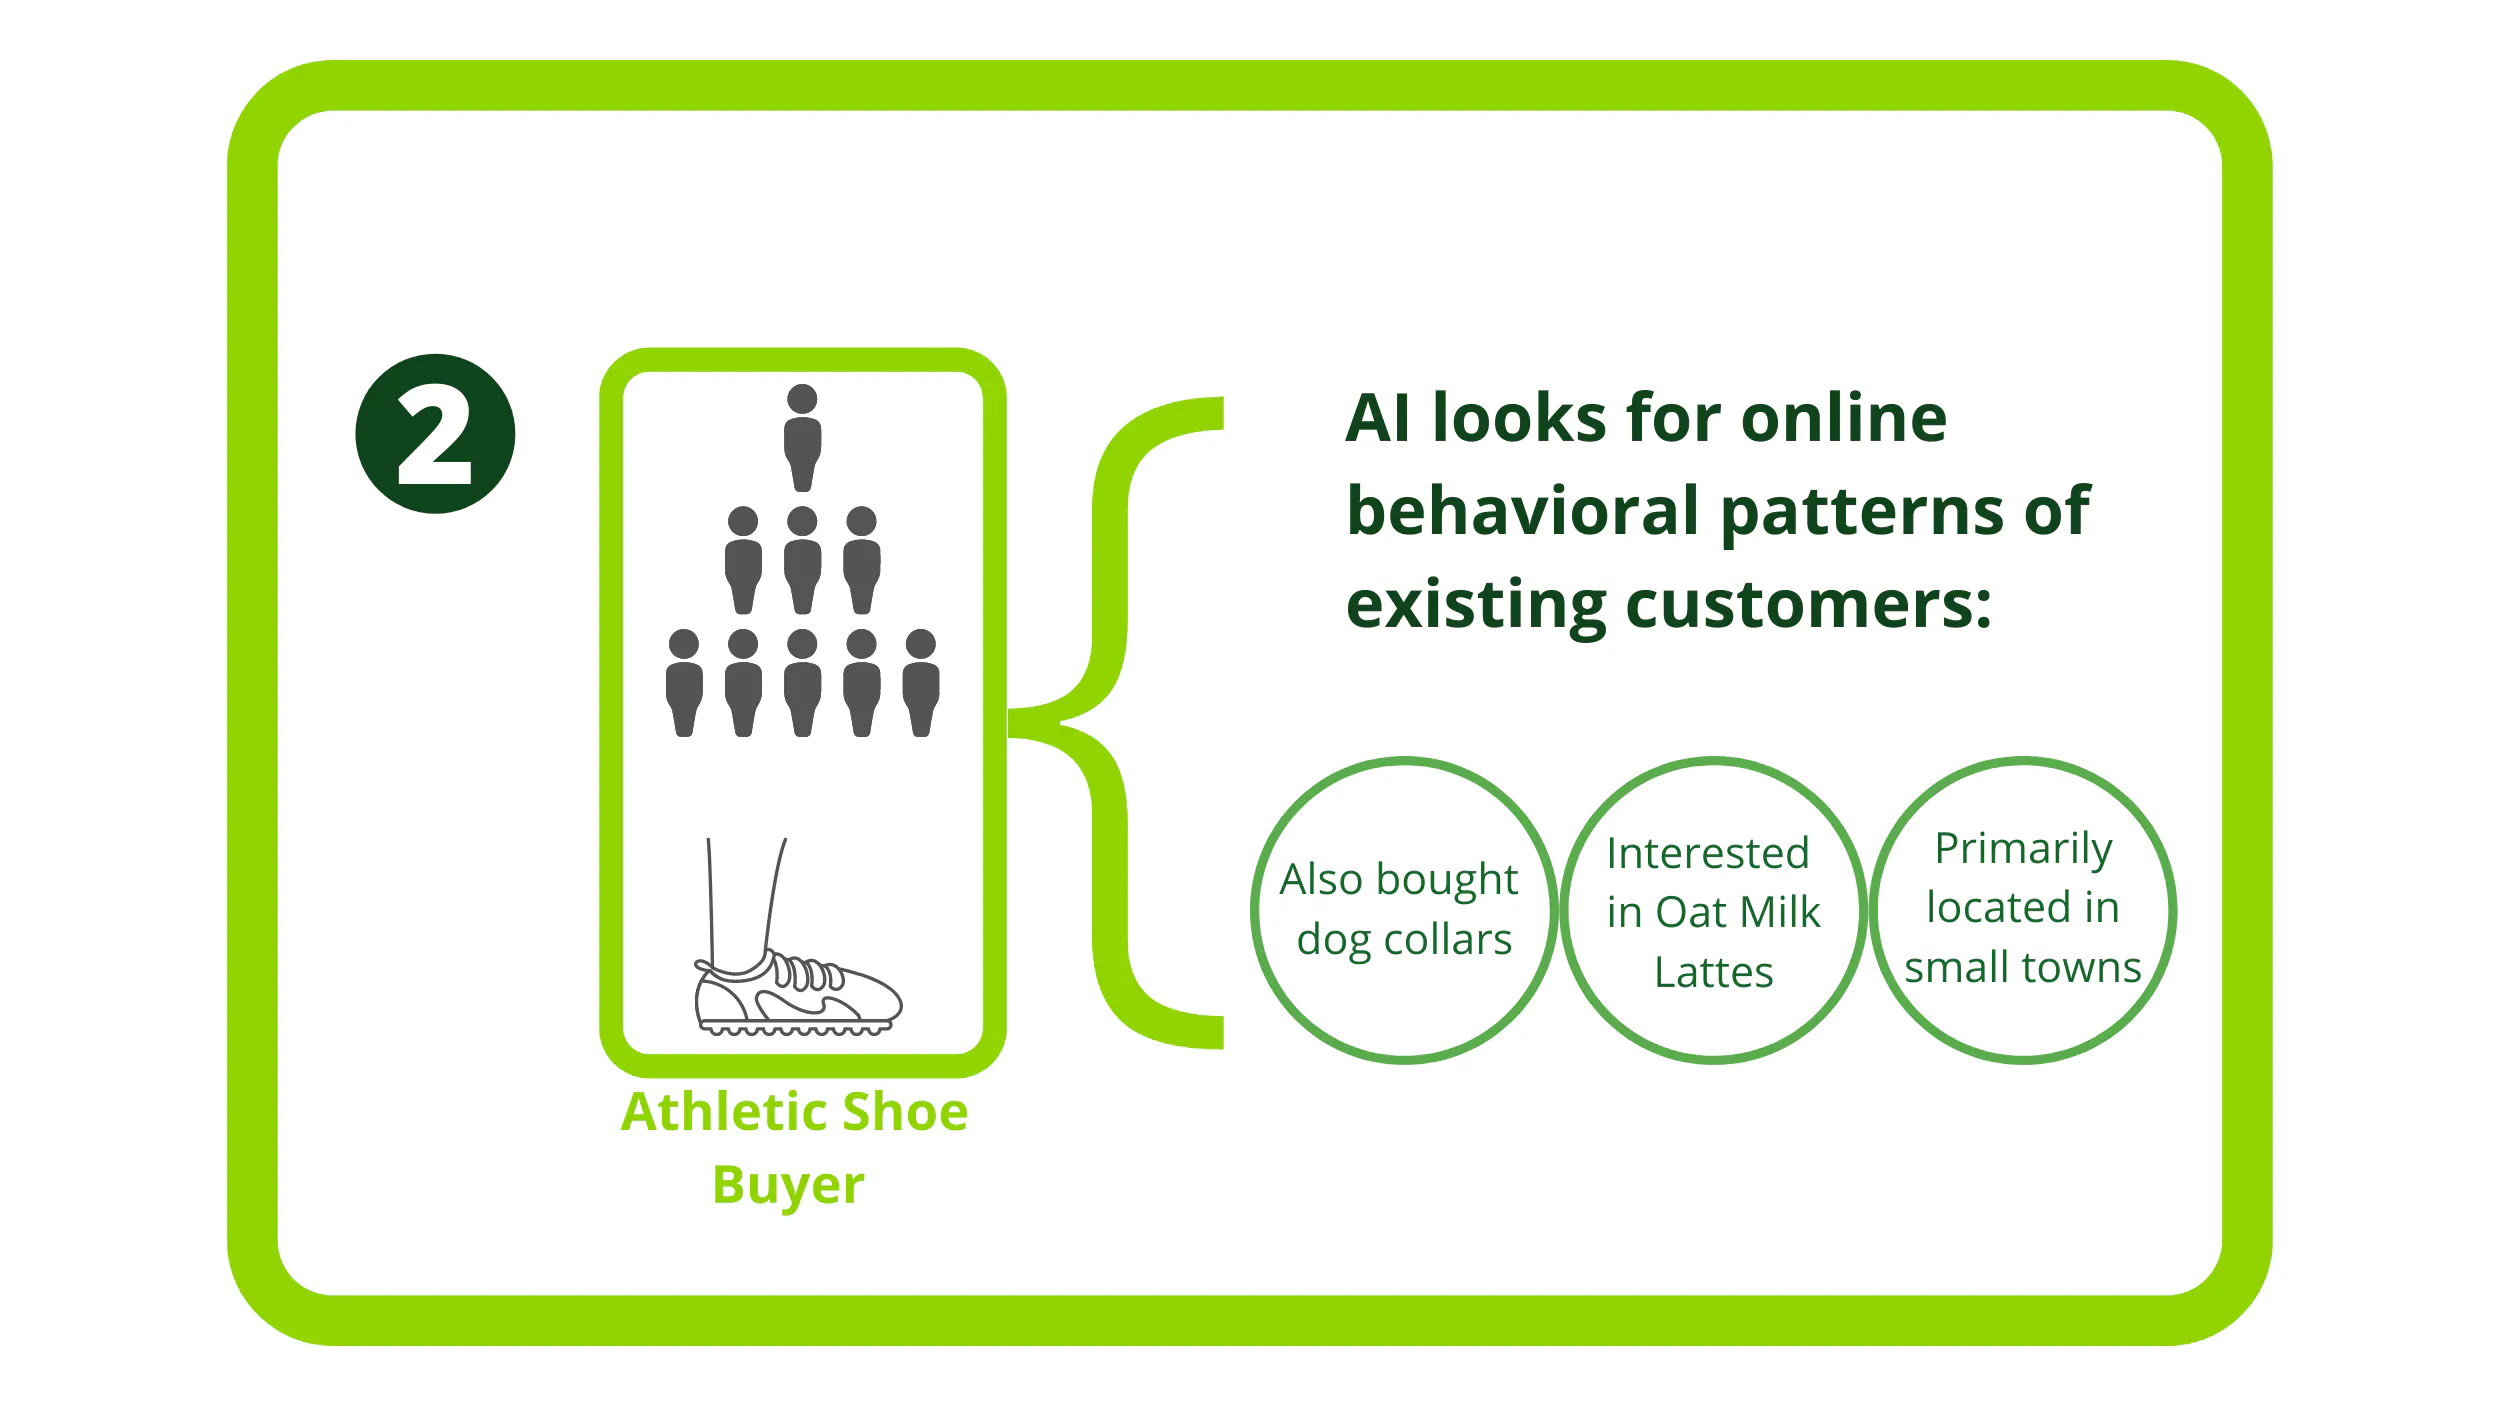 運動靴の購入者に対して、AIが既存顧客のオンライン行動パターンを調べる